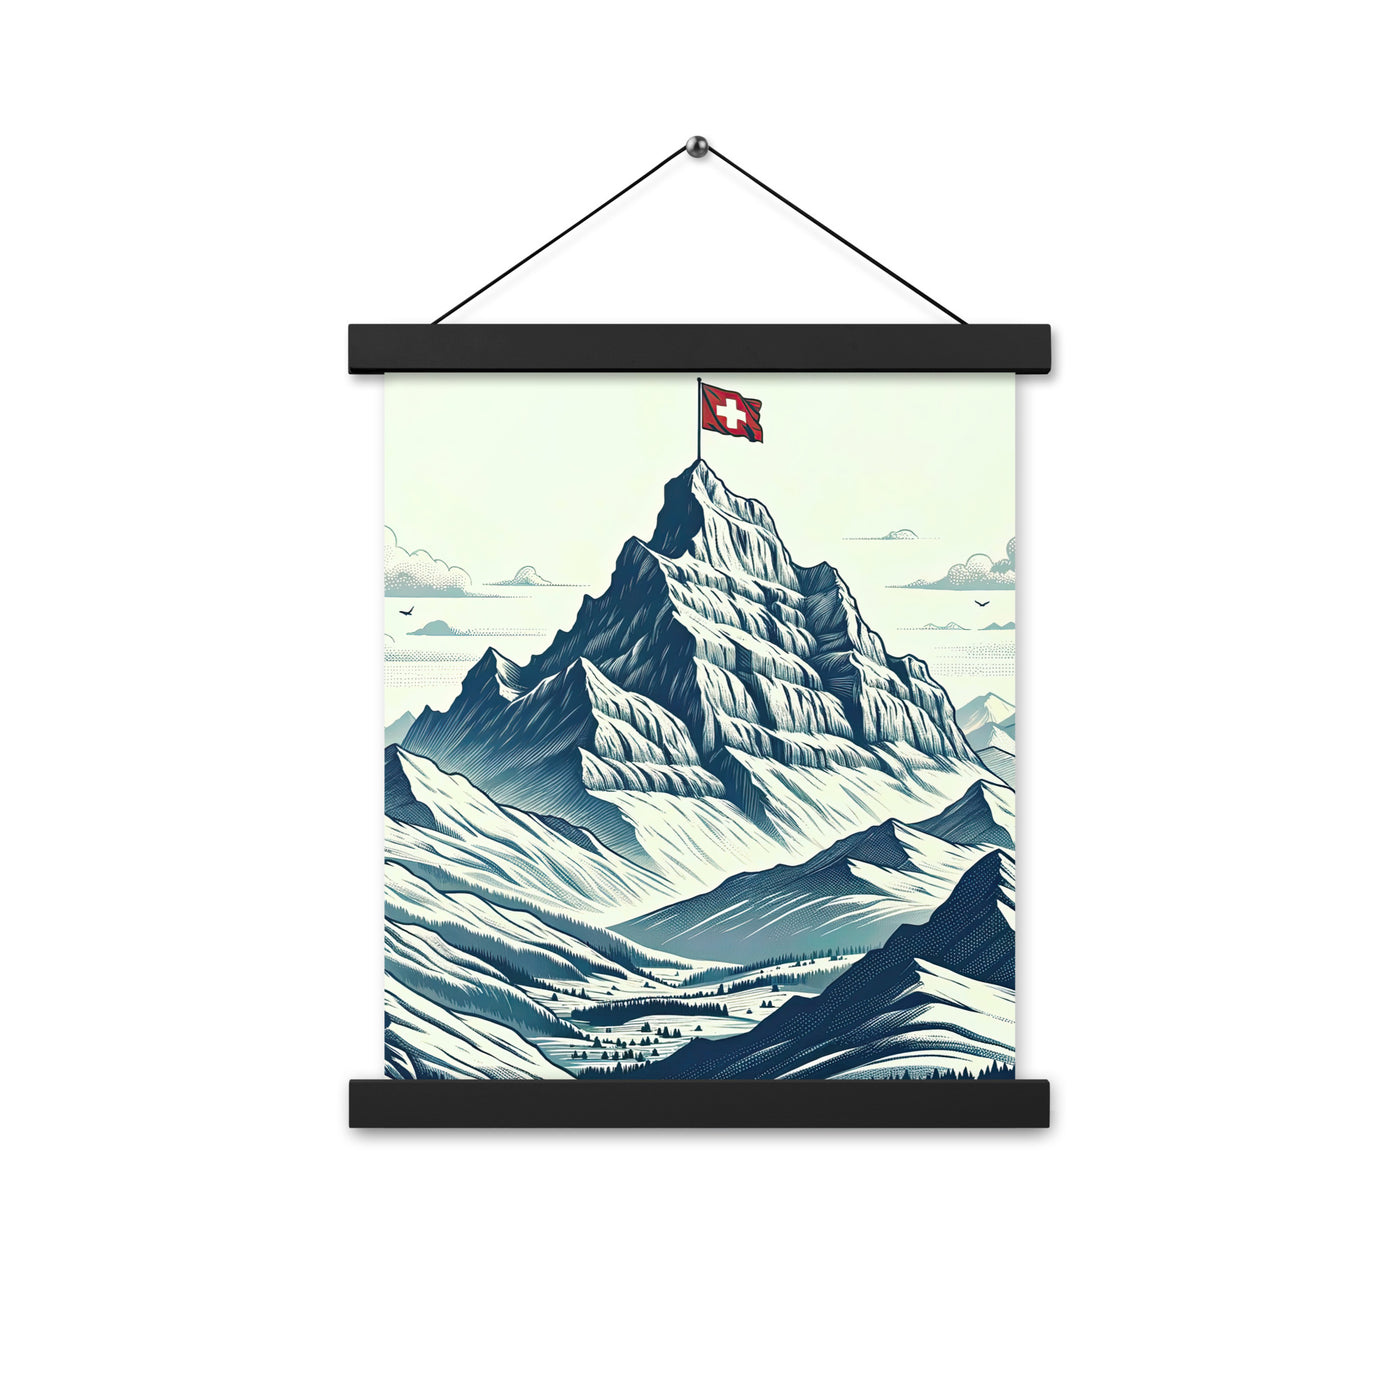 Ausgedehnte Bergkette mit dominierendem Gipfel und wehender Schweizer Flagge - Premium Poster mit Aufhängung berge xxx yyy zzz 27.9 x 35.6 cm